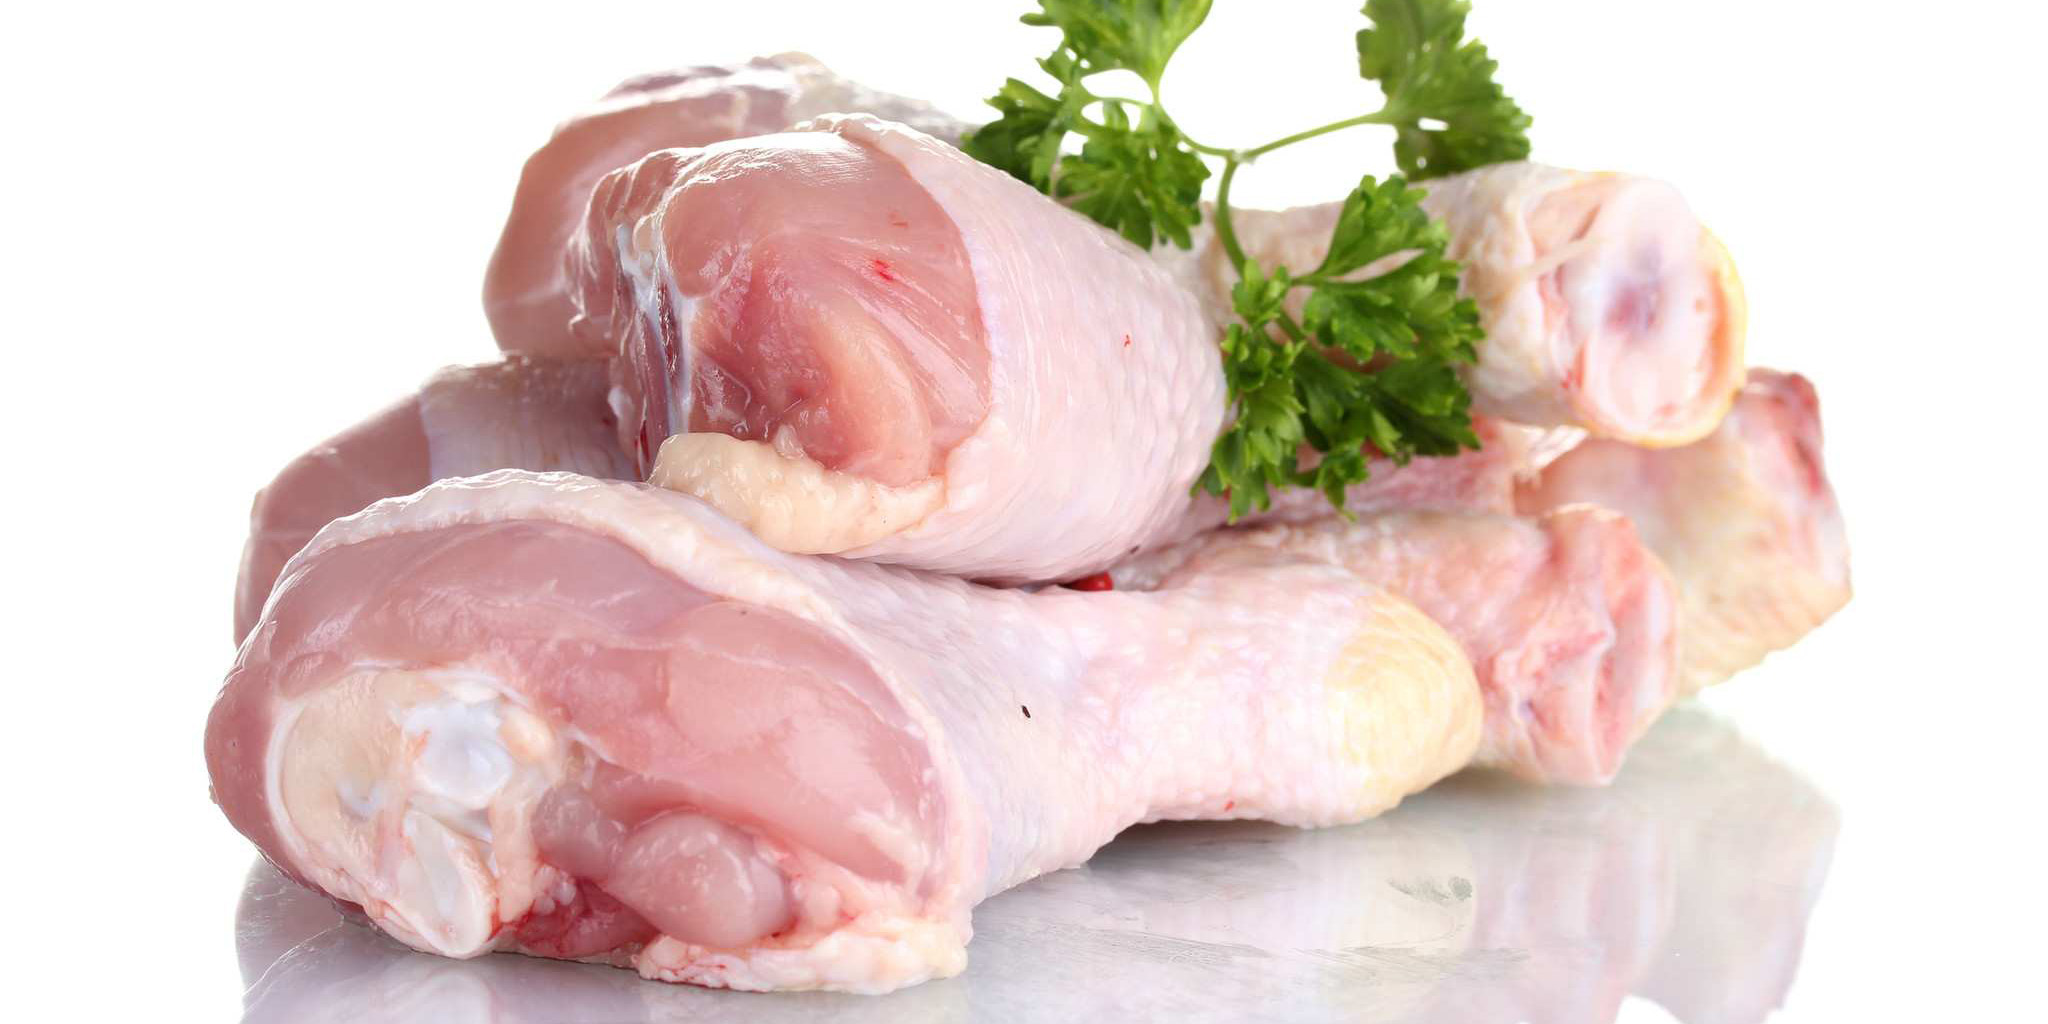 یک مسئول صنفی: حداکثر قیمت گوشت مرغ 79 هزار و 500 ریال است